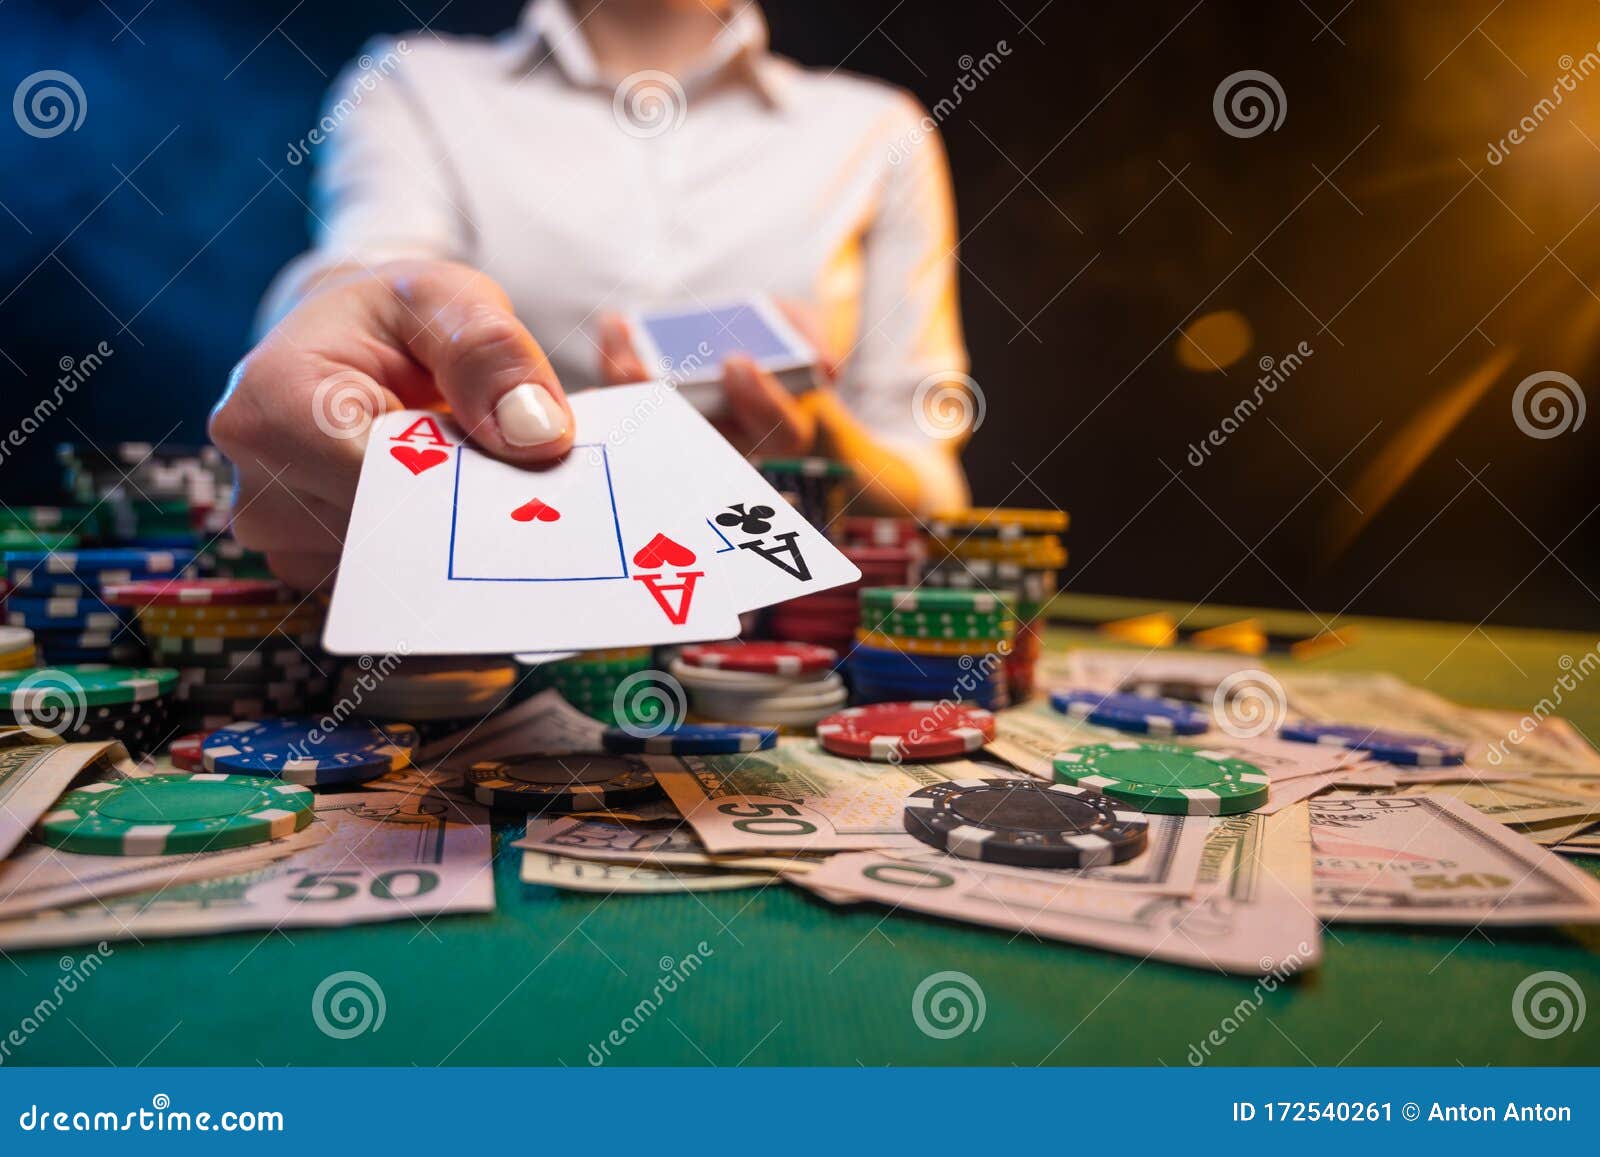 Conceito de jogo online de cassino. jogando fichas, cartas e dados